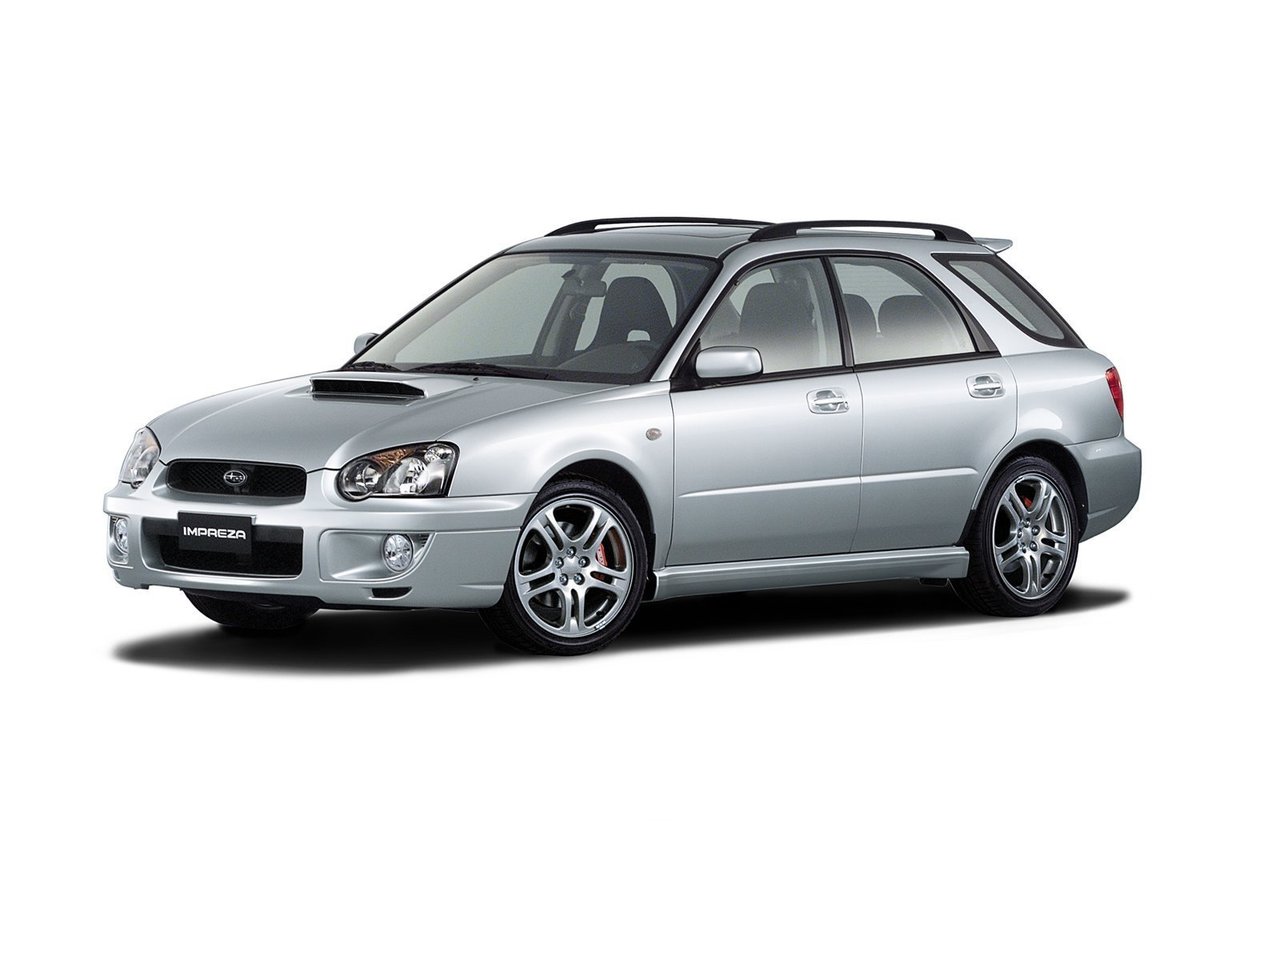 Расход газа одной комплектации универсала пять дверей Subaru Impreza WRX. Разница стоимости заправки газом и бензином. Автономный пробег до и после установки ГБО.